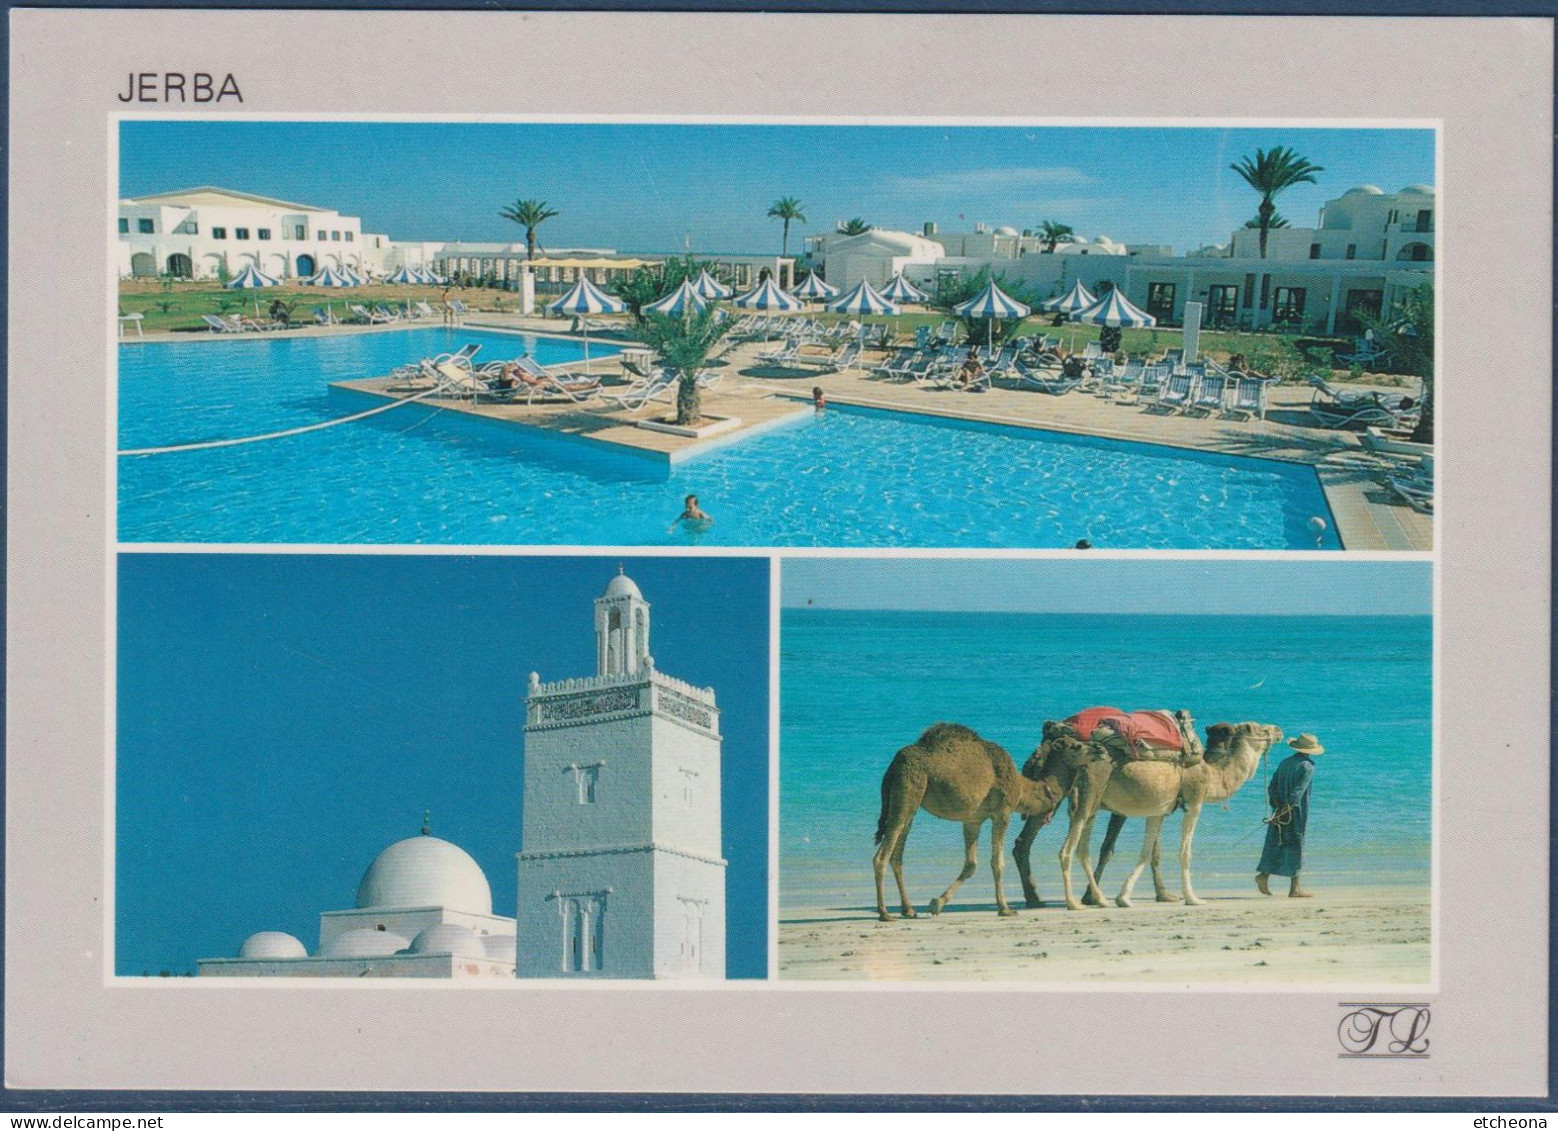 Djerba, Jerba Robinson Club, Multivues, Piscine, Minaret, Dromadaires Au Bord De L'eau, Avec Timbre Non Oblitéré - Tunisie